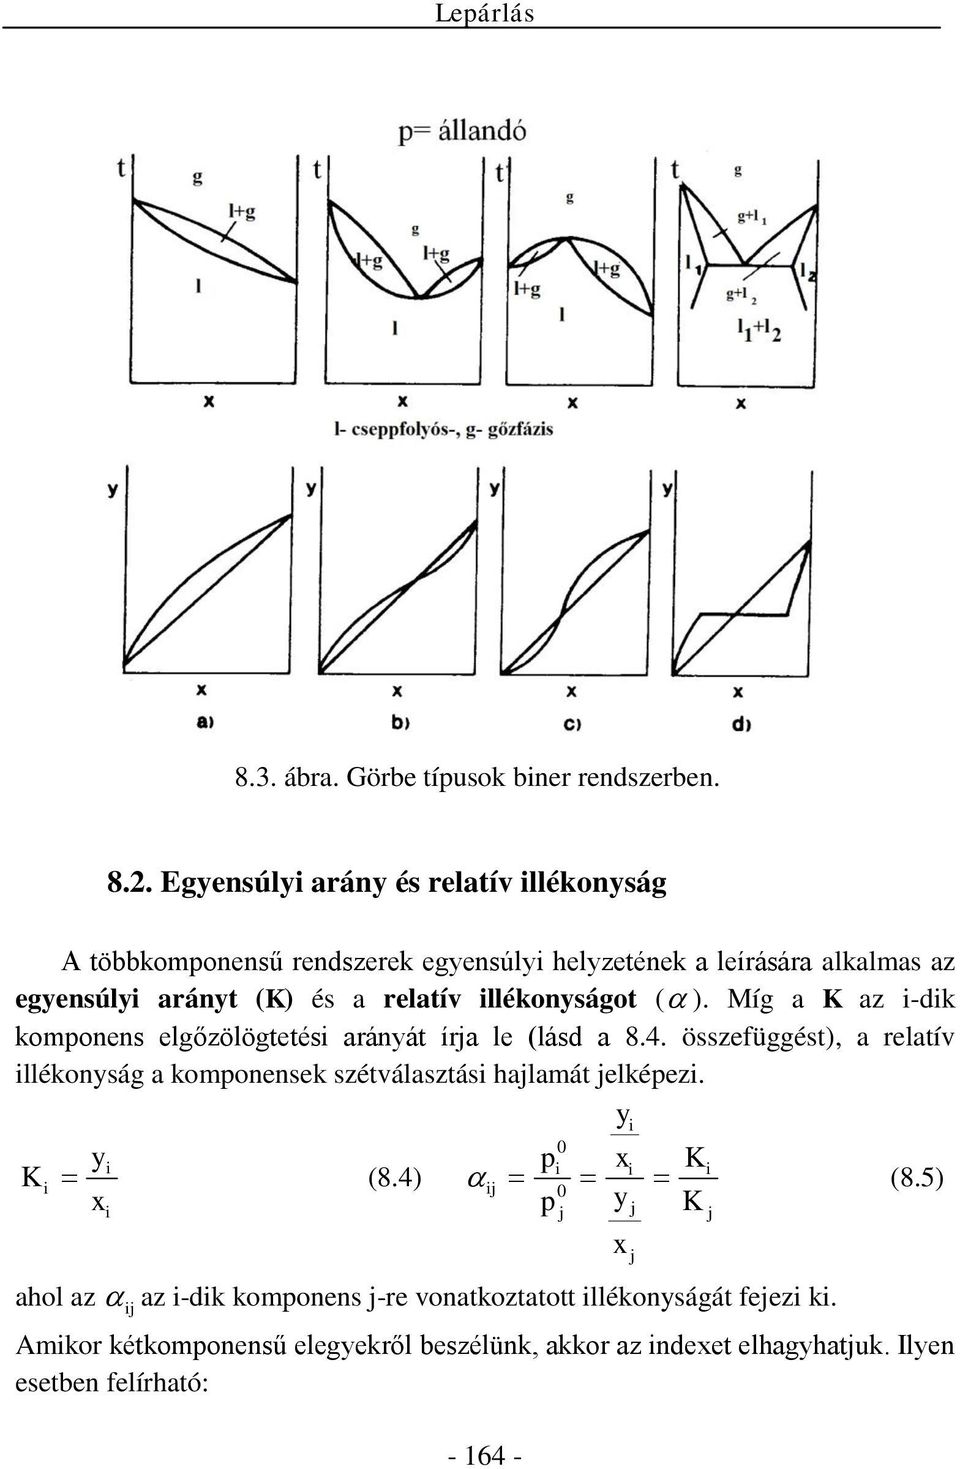 . Egensúli arán és relatív illékonság többkomonensű rendszerek egensúli helzetének a leírására alkalmas az egensúli aránt (K) és a relatív